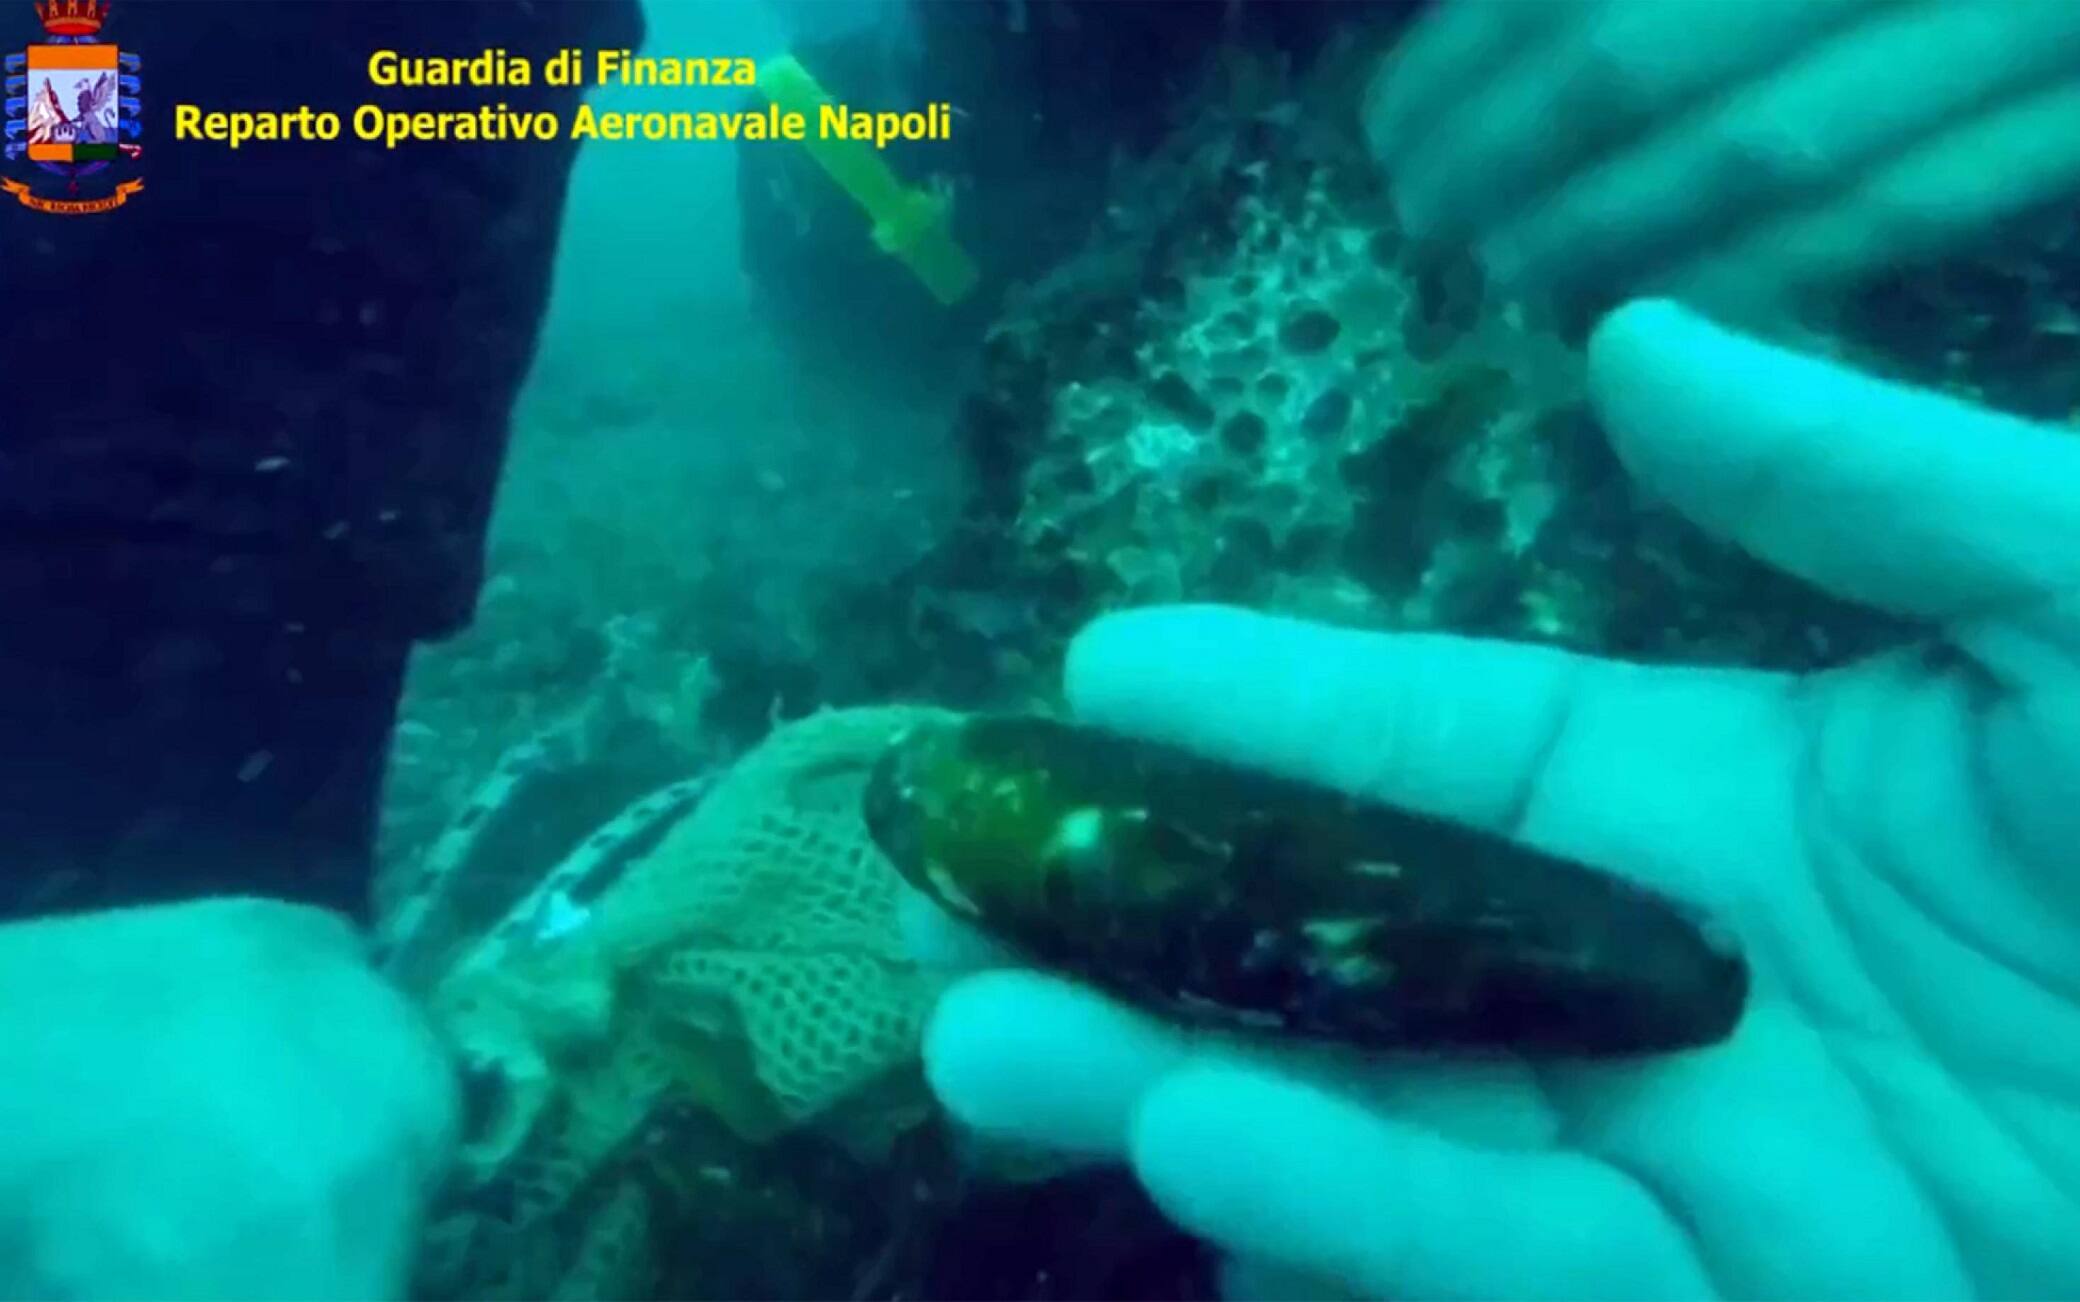 Un fermo immagine tratto da un video dell'operazione della guardia di finanza di Napoli